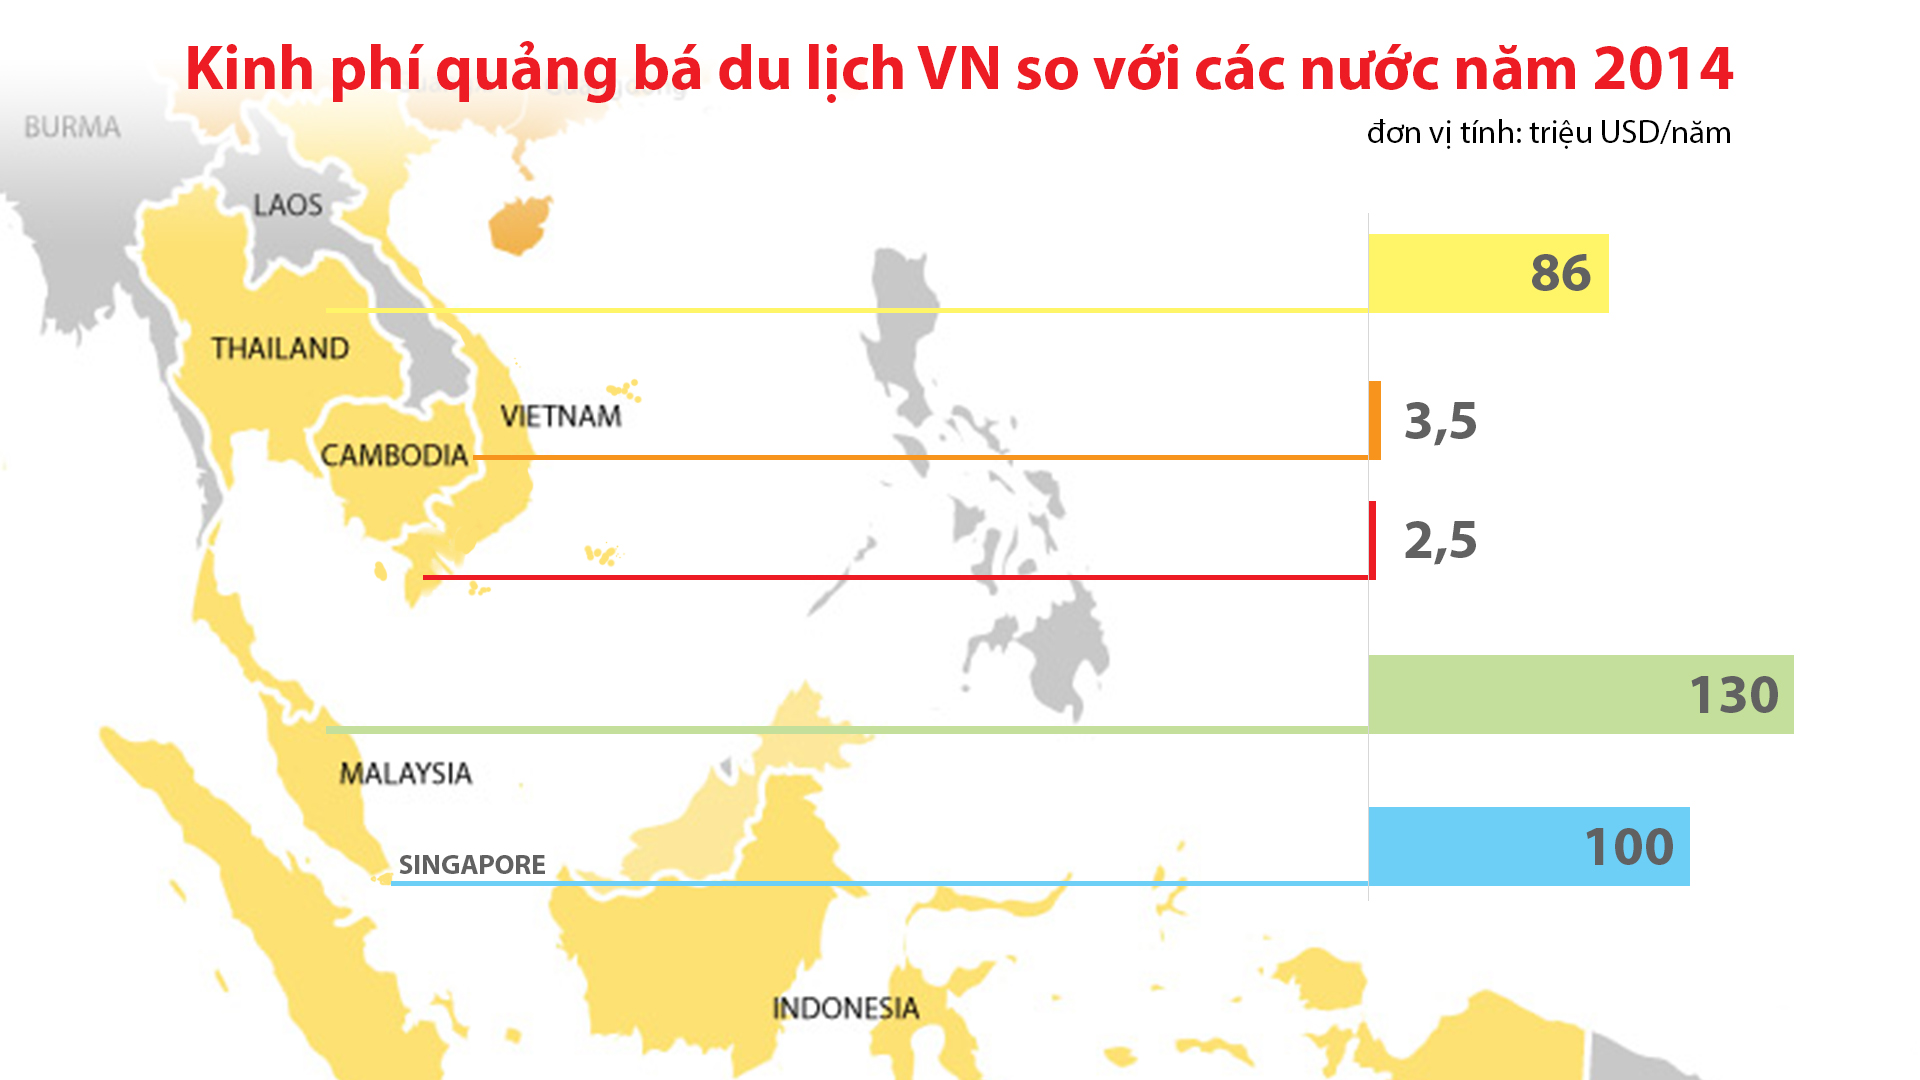 Kinh phí quảng bá du lịch VN so với các nước (năm 2014) Nguồn: VNAT - Đồ họa: V.Cường